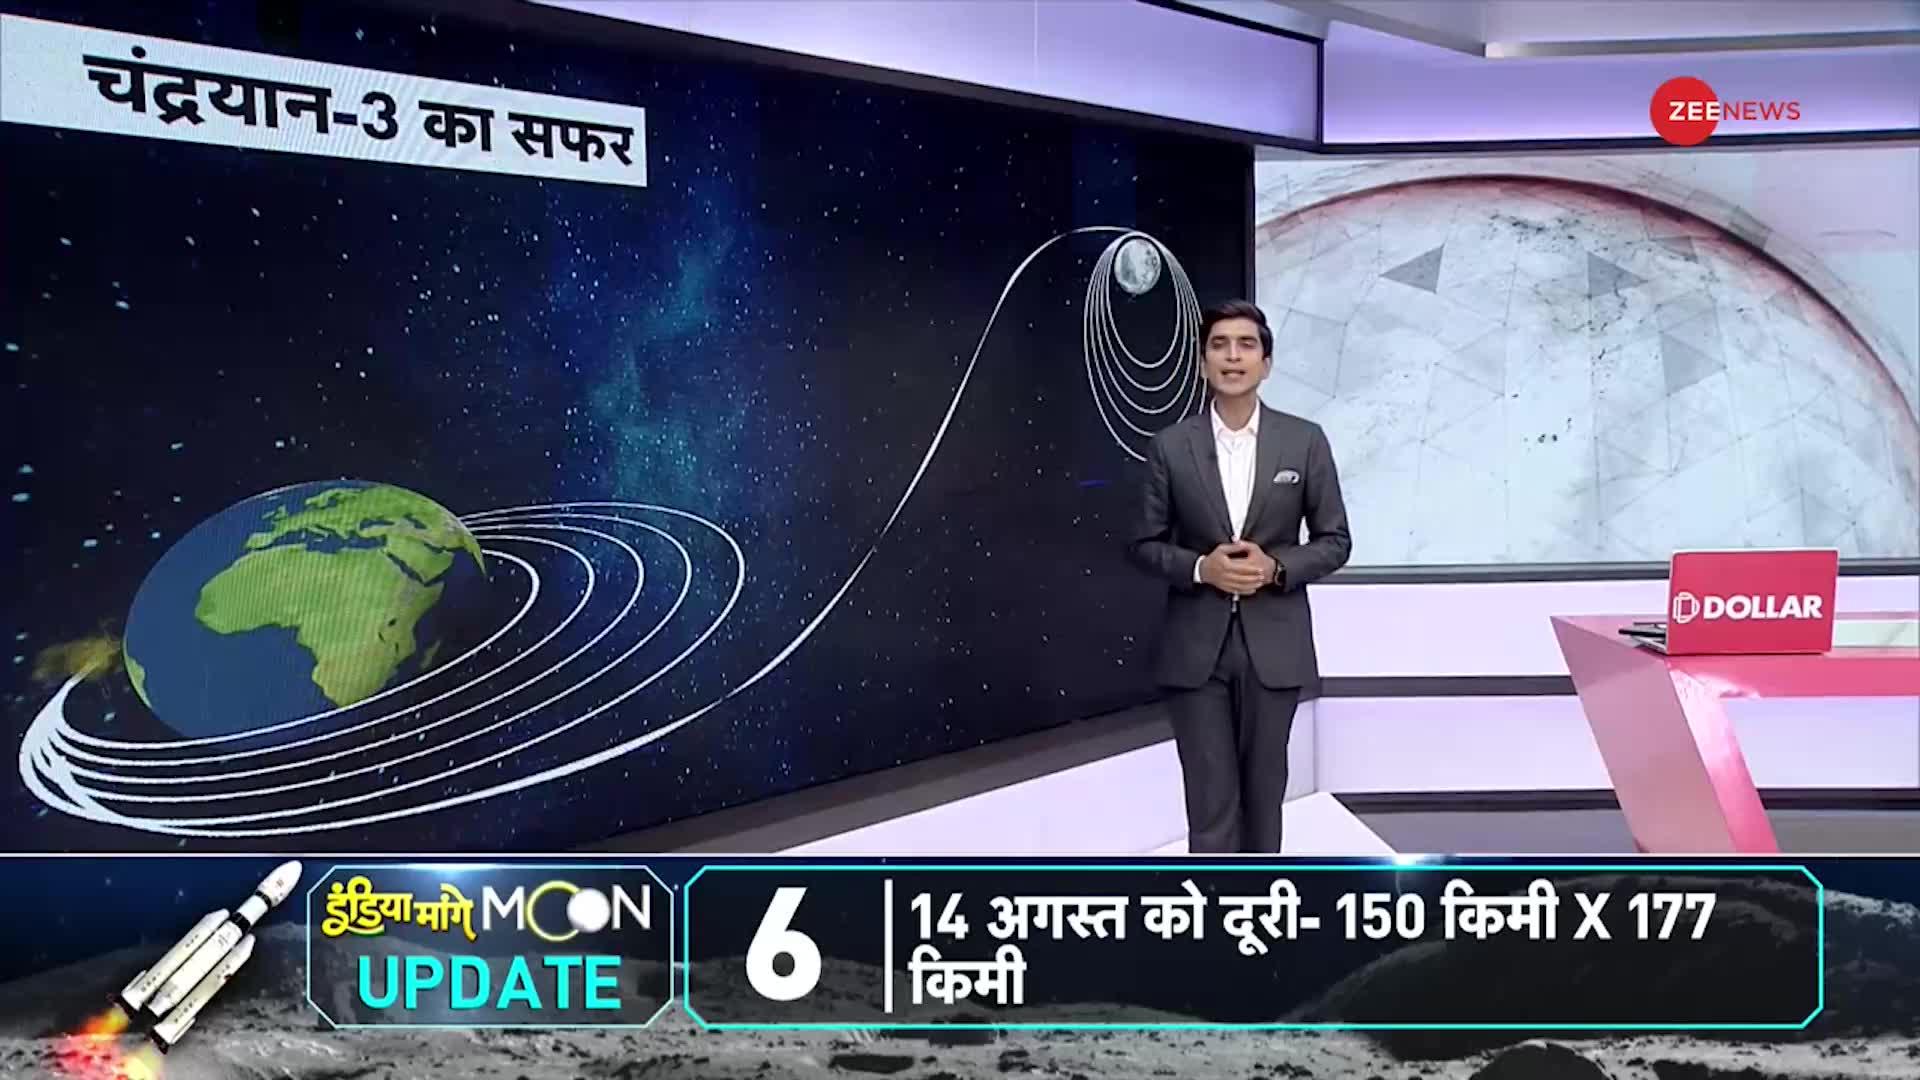 Chandrayaan 3 LIVE Location: पृथ्वी से चांद तक सफर का ग्राफिकल विश्लेषण! 40 में से 32 दिन पूरे!